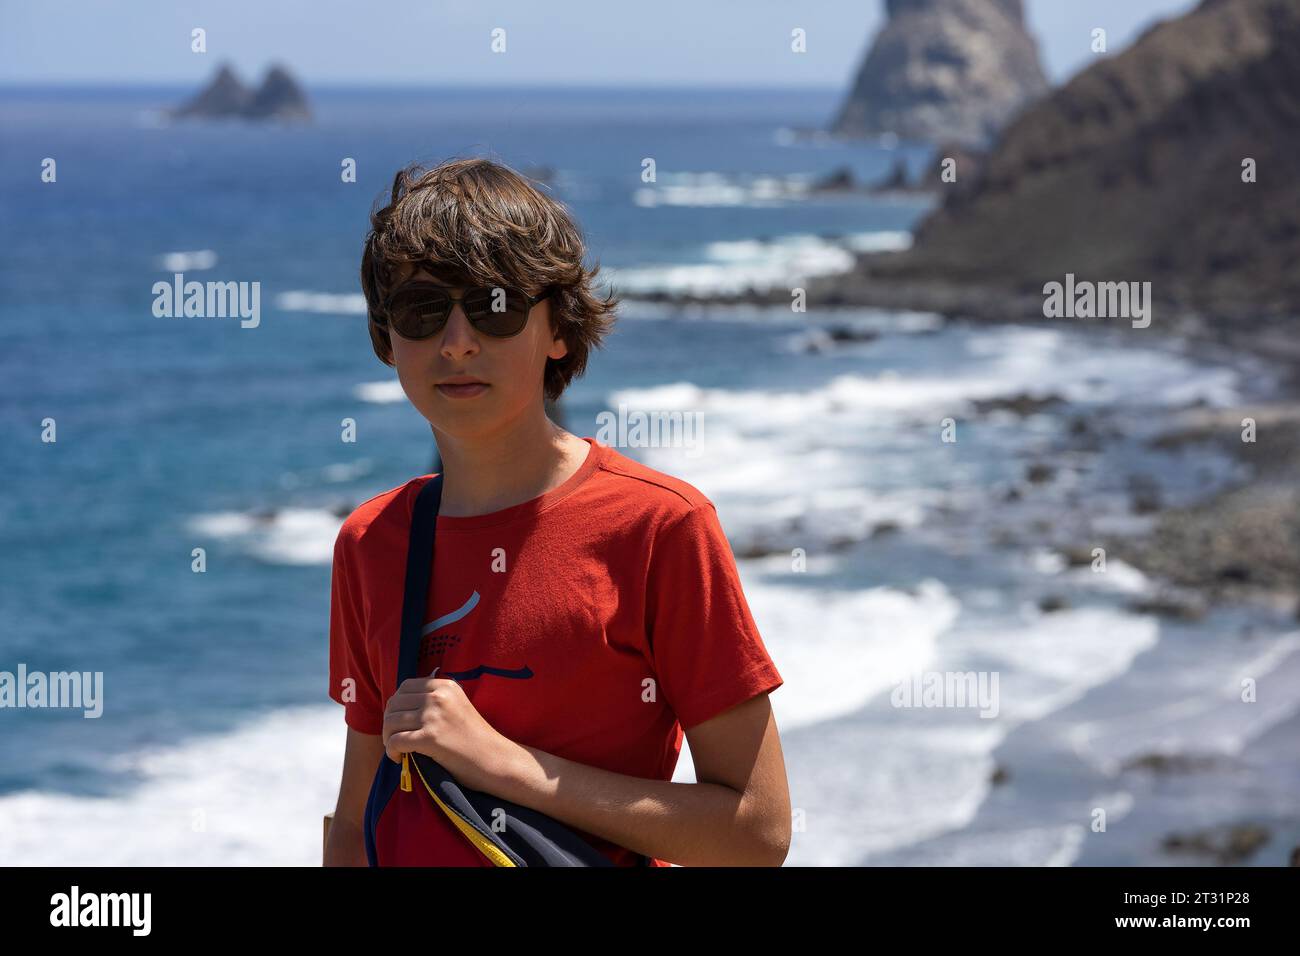 Porträt eines Teenagers vor der felsigen Küste des Atlantiks. Aussichtspunkt - Mirador Playa de Benijo, Teneriffa. Kanarische Inseln. Spanien. Stockfoto